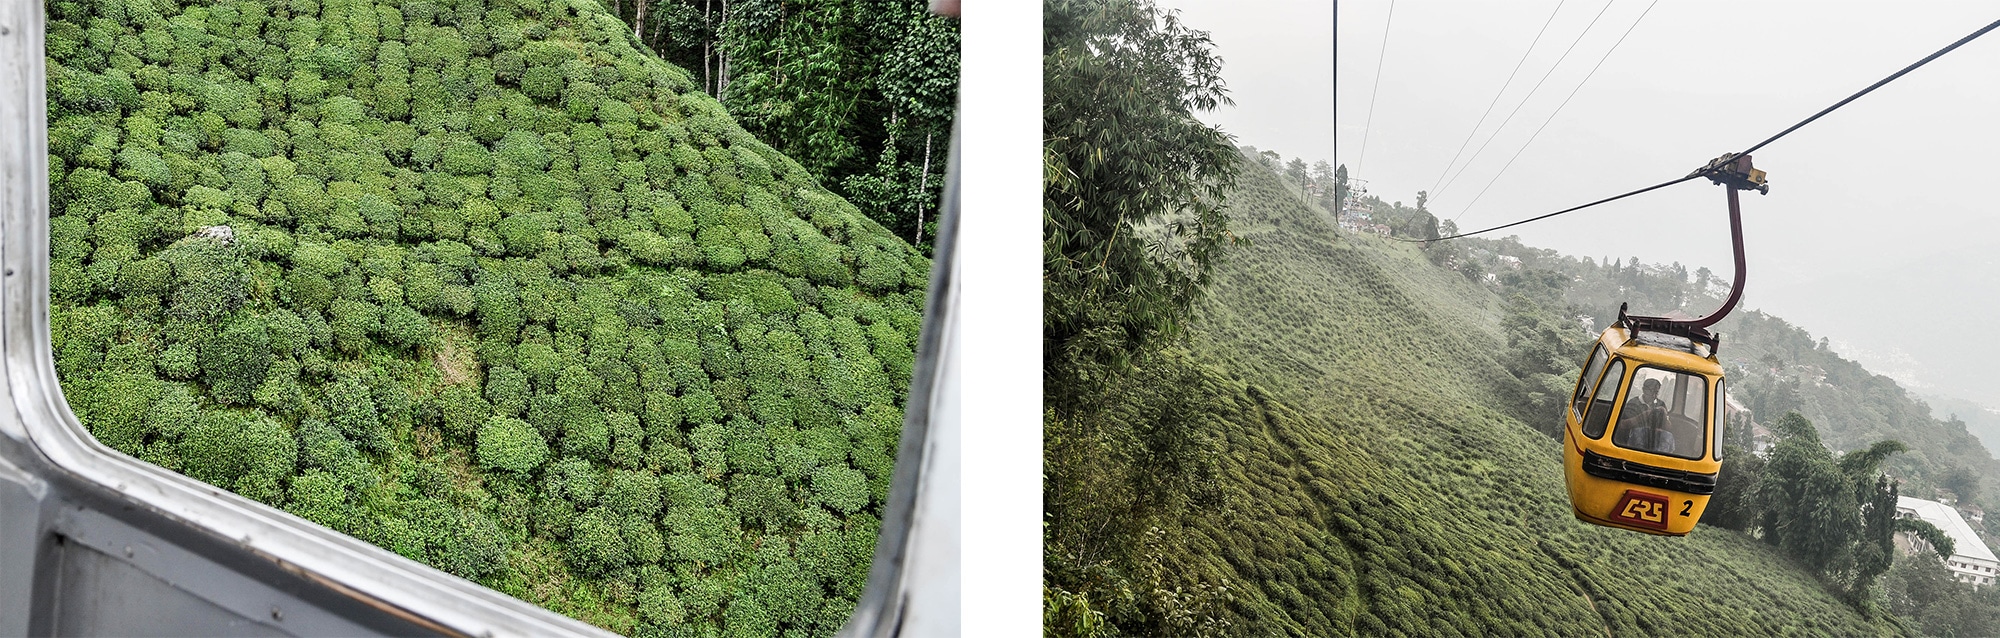 Vue depuis le téléphérique sur les plantations de thé à Darjeeling en Inde